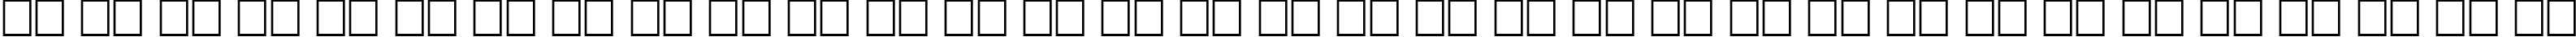 Пример написания русского алфавита шрифтом ShadowedBlack Normal